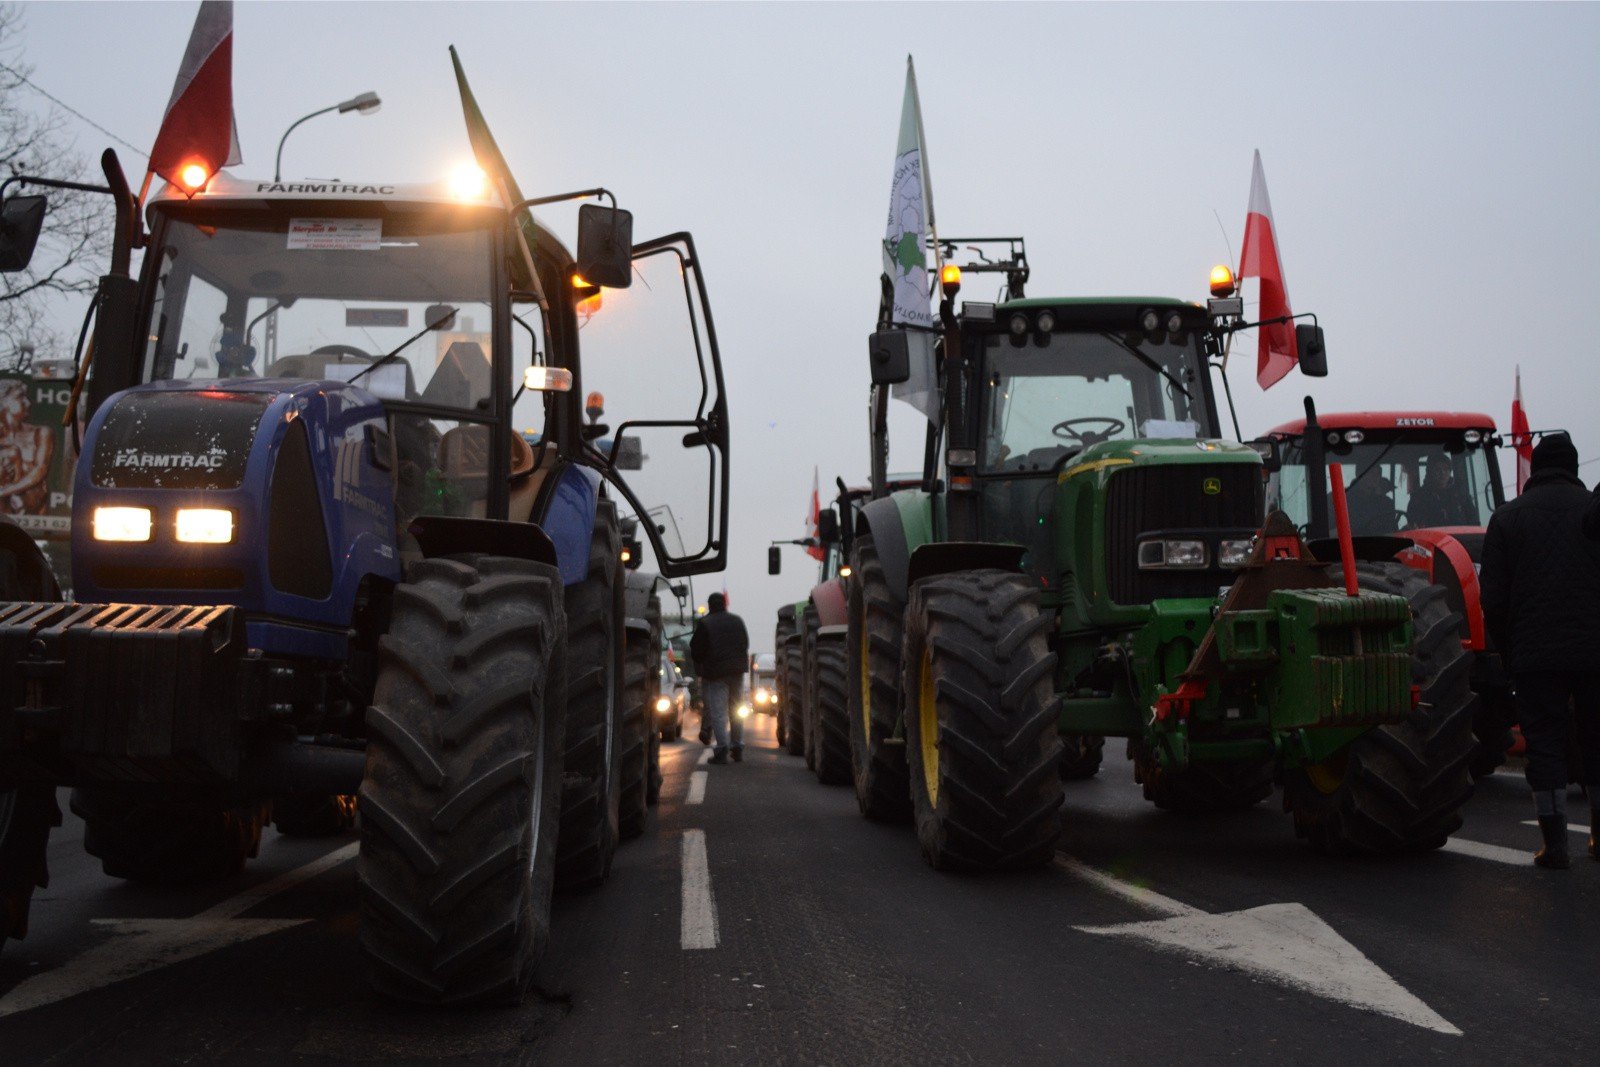 Protest rolników 2019: Rolnicy blokują drogi w całej Wielkopolsce. To  początek agropowstania? | Głos Wielkopolski